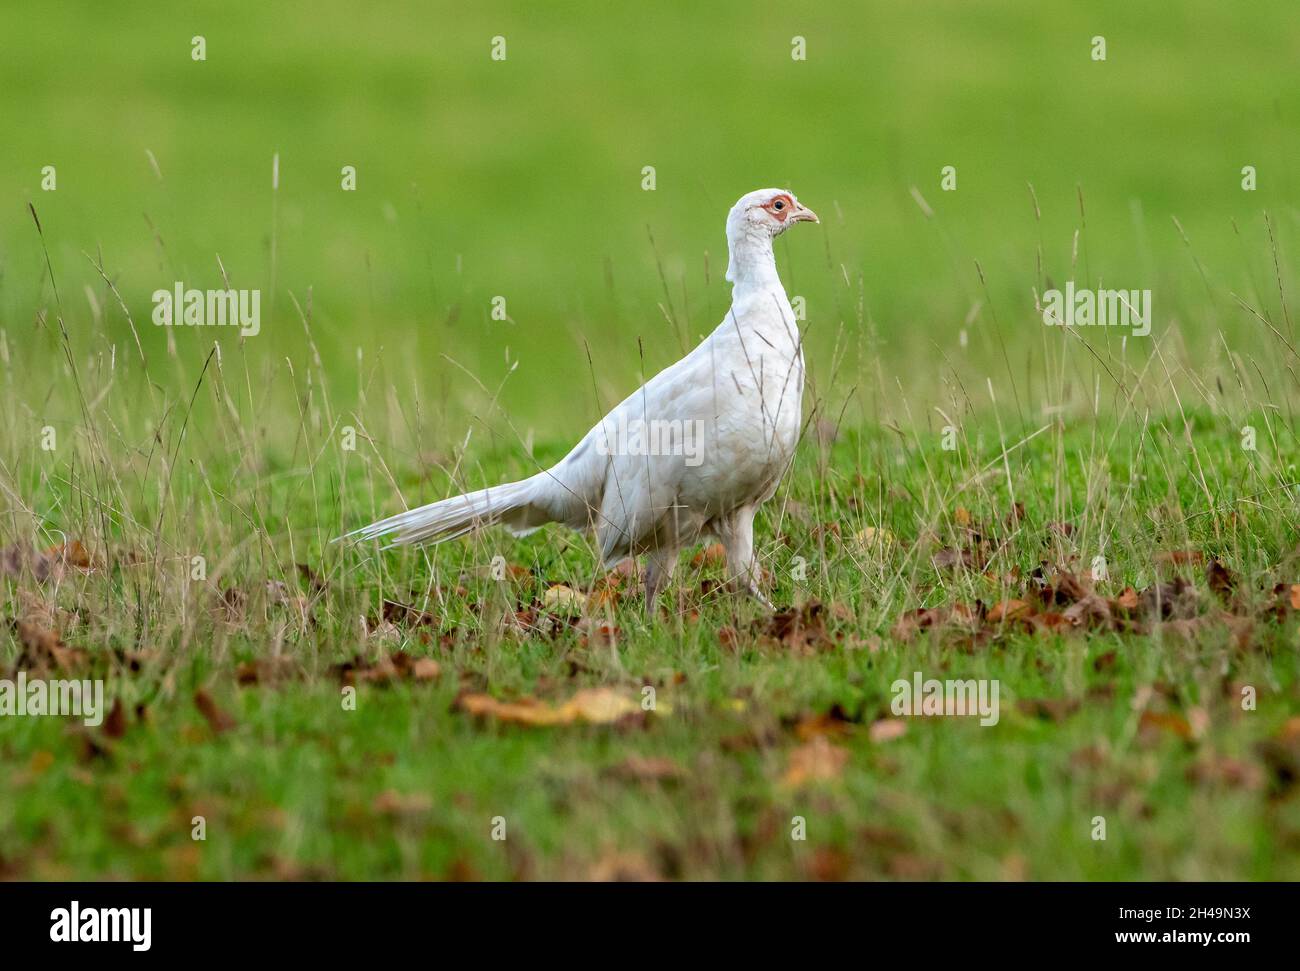 A white pheasant, Milnthorpe, Cumbria, UK Stock Photo